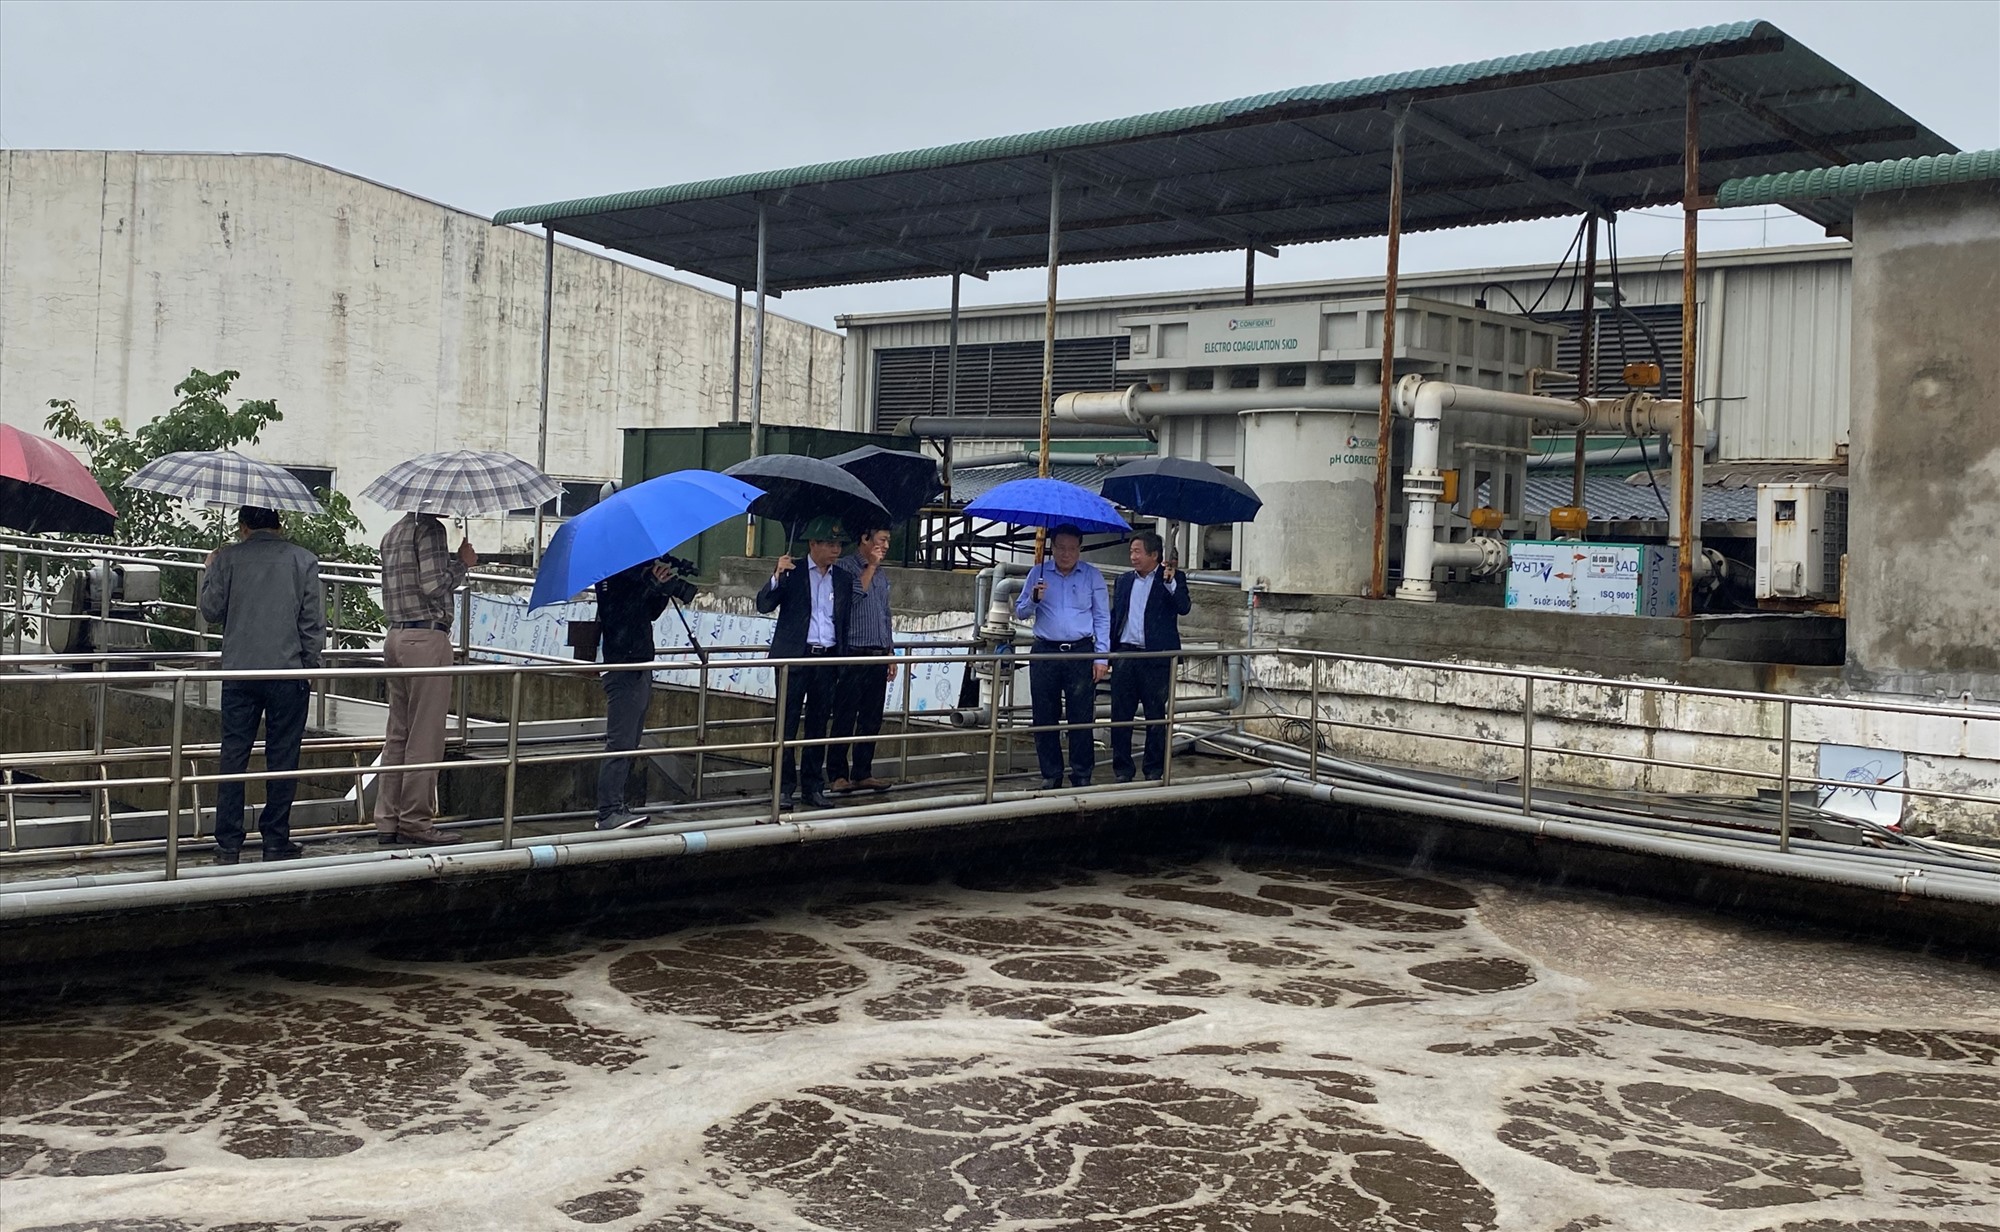 Phó Chủ tịch Thường trực UBND tỉnh Hà Sỹ Đồng kiểm tra hệ thống xử lý nước thải tại Cụm liên hợp dệt – nhuộm – may Hải Lăng - Ảnh: N.B